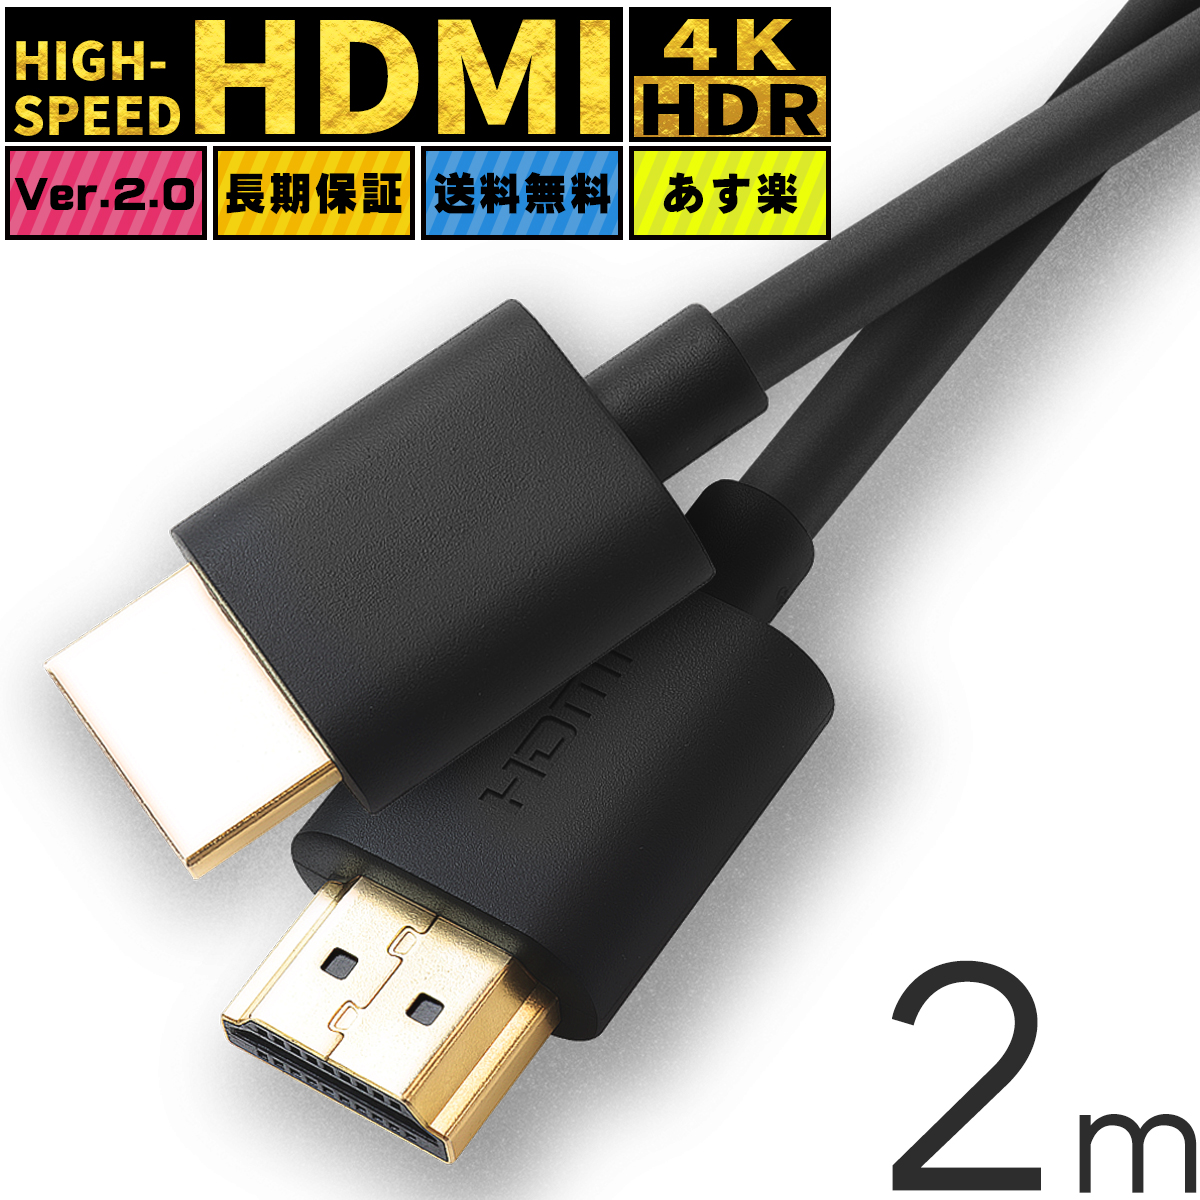 人気特価激安 即出荷 送料無料 HDMI ハイスピード HDMIケーブル DVDプレーヤー HDDレコーダー hdmiケーブル 2m ケーブル Ver.2.0 4K 8K 60Hz 3D イーサネット スリム 細線 テレビ tv ニンテンドー switch スイッチ 高品質 業務用 ポイント消化 DM便 fenix-corp.com fenix-corp.com